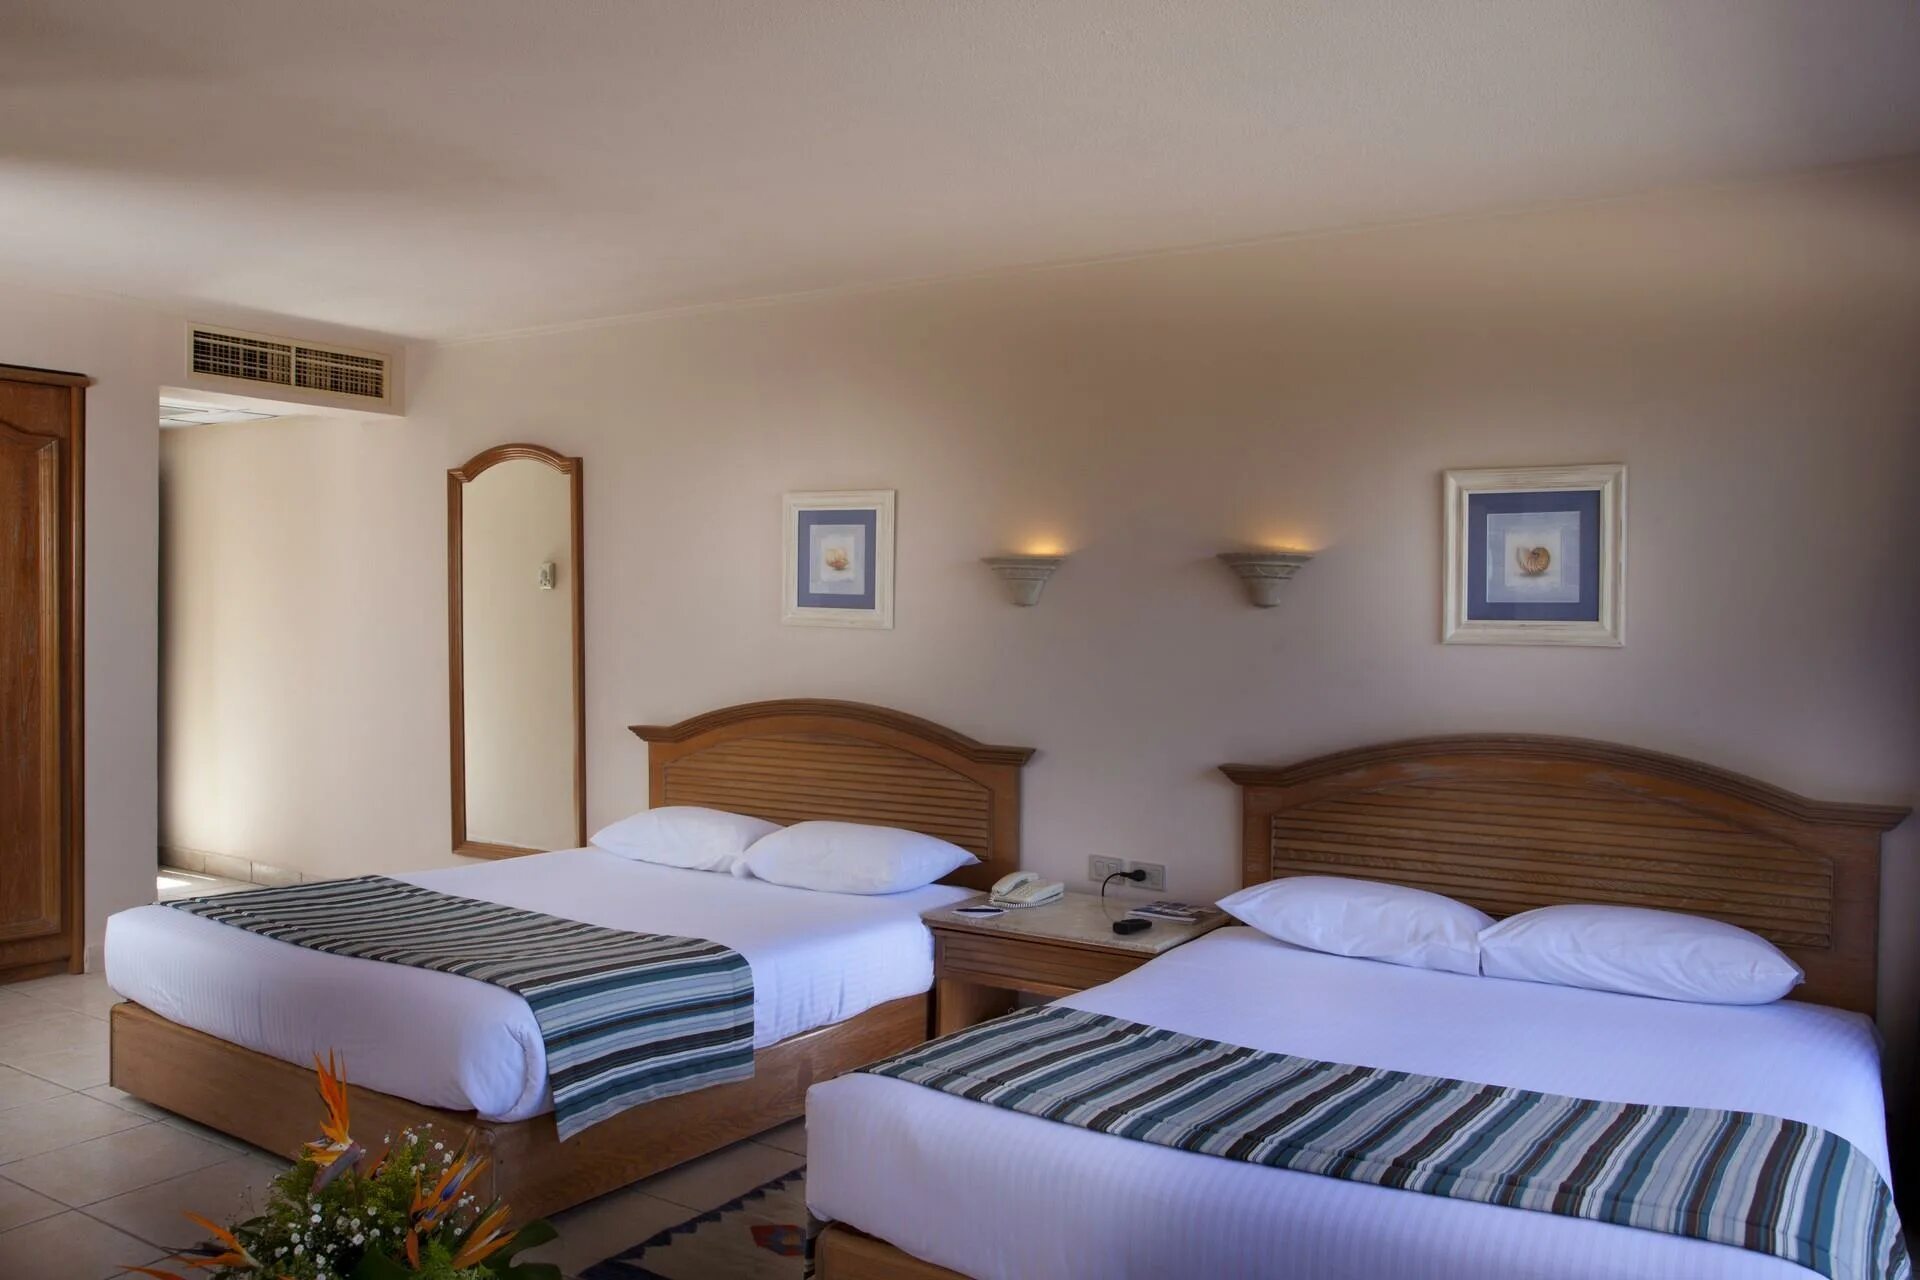 Отель Coral Beach Hotel Hurghada. Корал Бич Хургада. Coral Beach Hotel Hurghada 4. Египет Хургада отель Корал Бич Резорт 4 звезды.